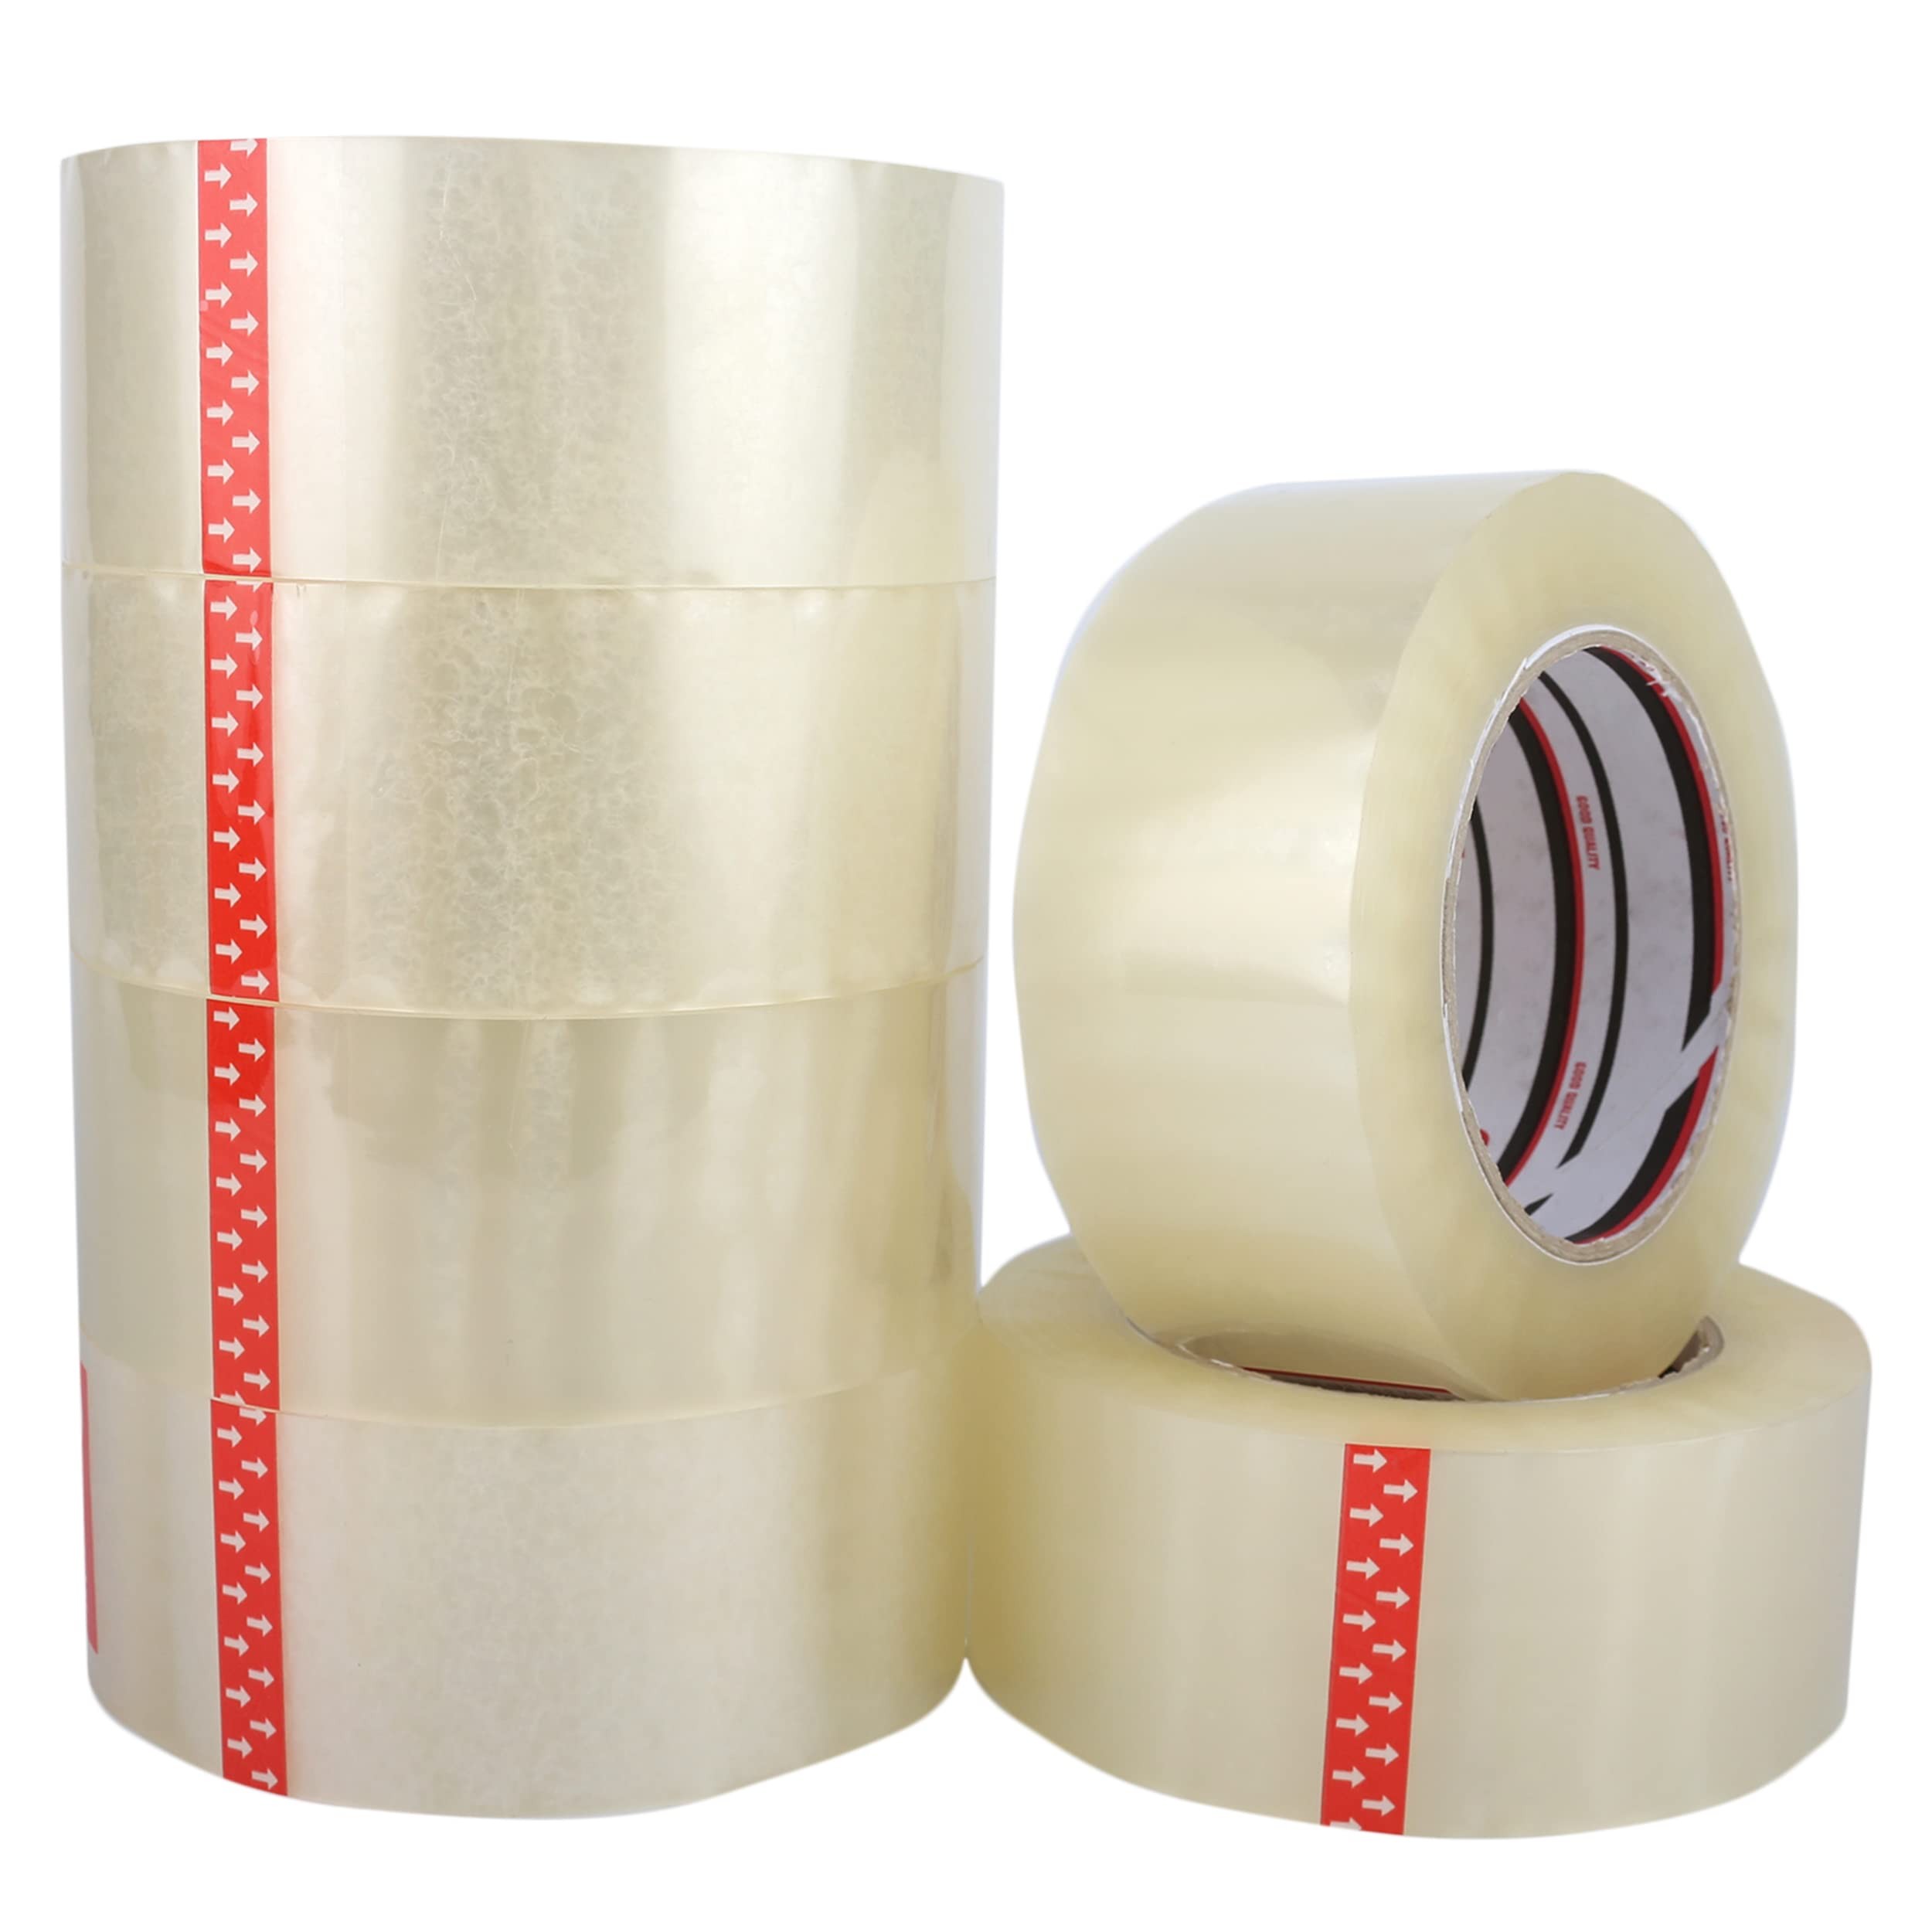 Pack 6 cintas adhesiva precinto transparente multiuso 48 mm x 120 m ideal  para embalar y cerrar cajas